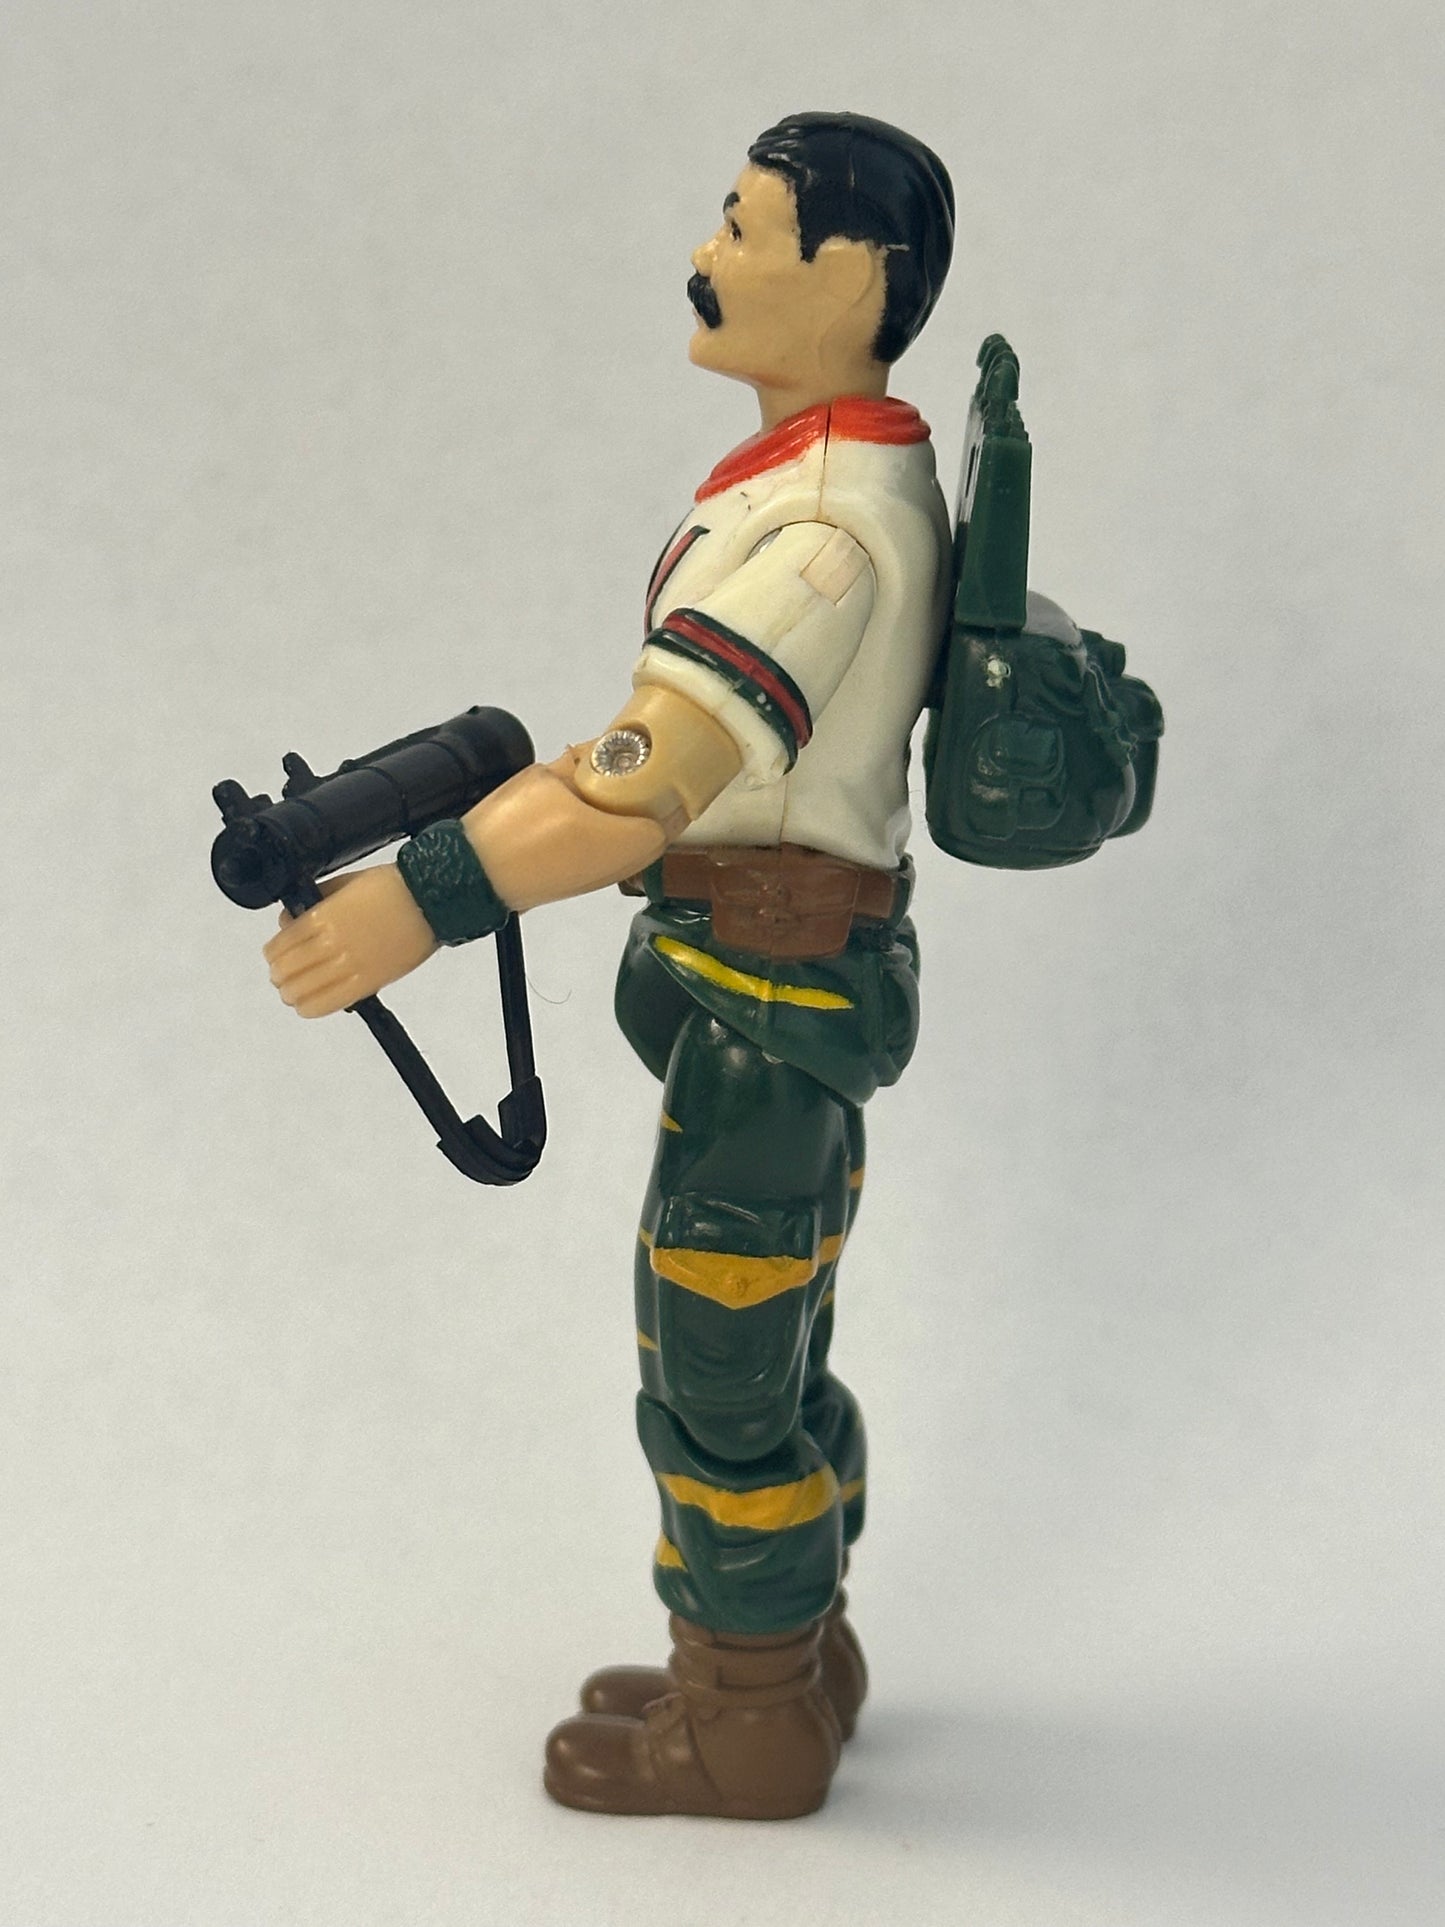 Bazooka v2 3 3/4” G.I.Joe Action Figure